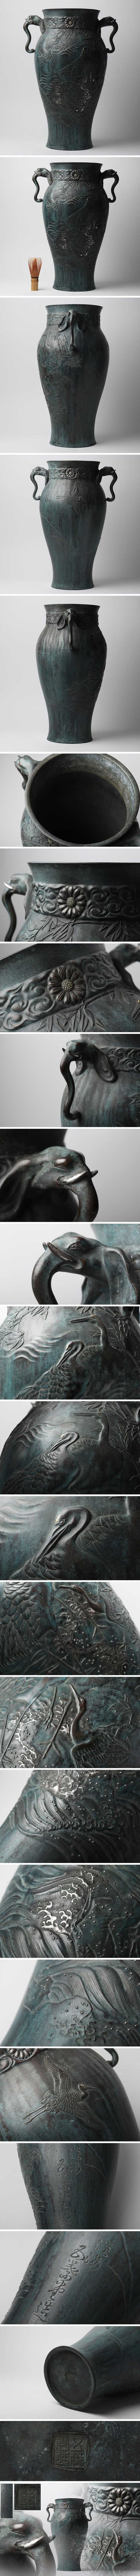 【純正取寄】『氷』特別出品 在銘 在款 極上 古銅 青銅 細密金銀銀象嵌 鶴文 象双耳瓶 花瓶 HJ01 花器